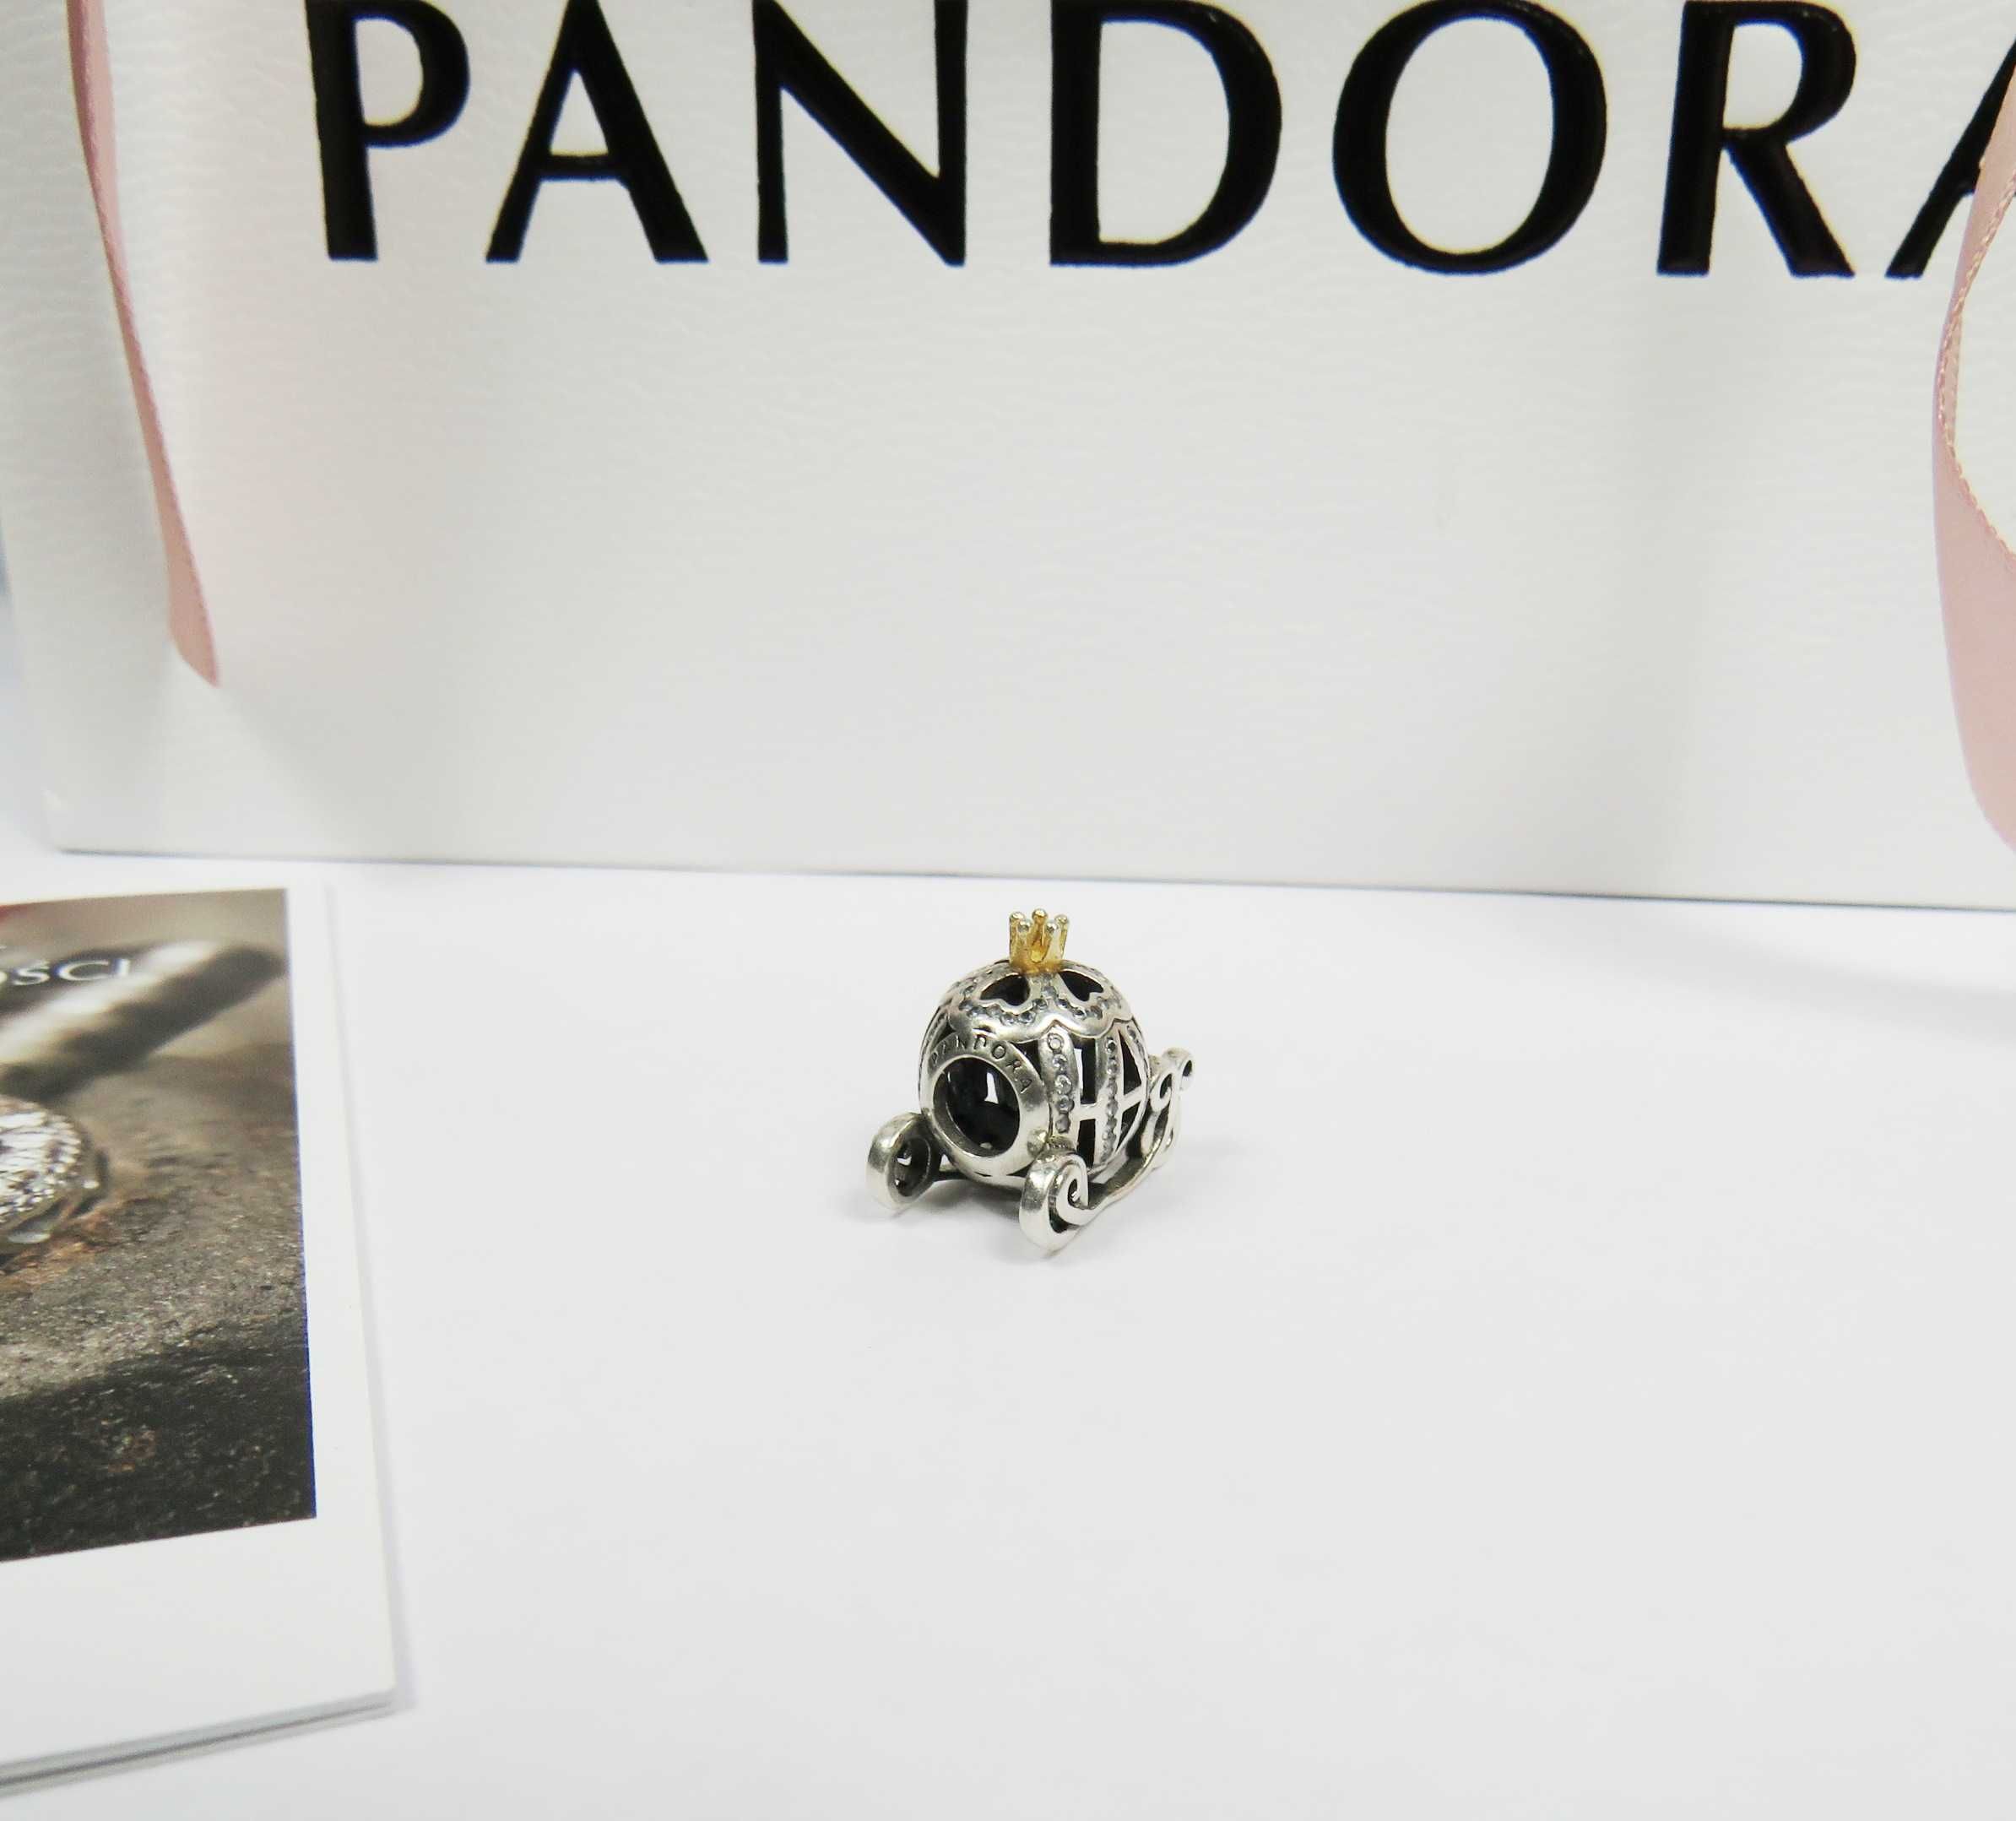 Pandora charms kareta Kopciuszka zawieszka Pandora z certyfikatem